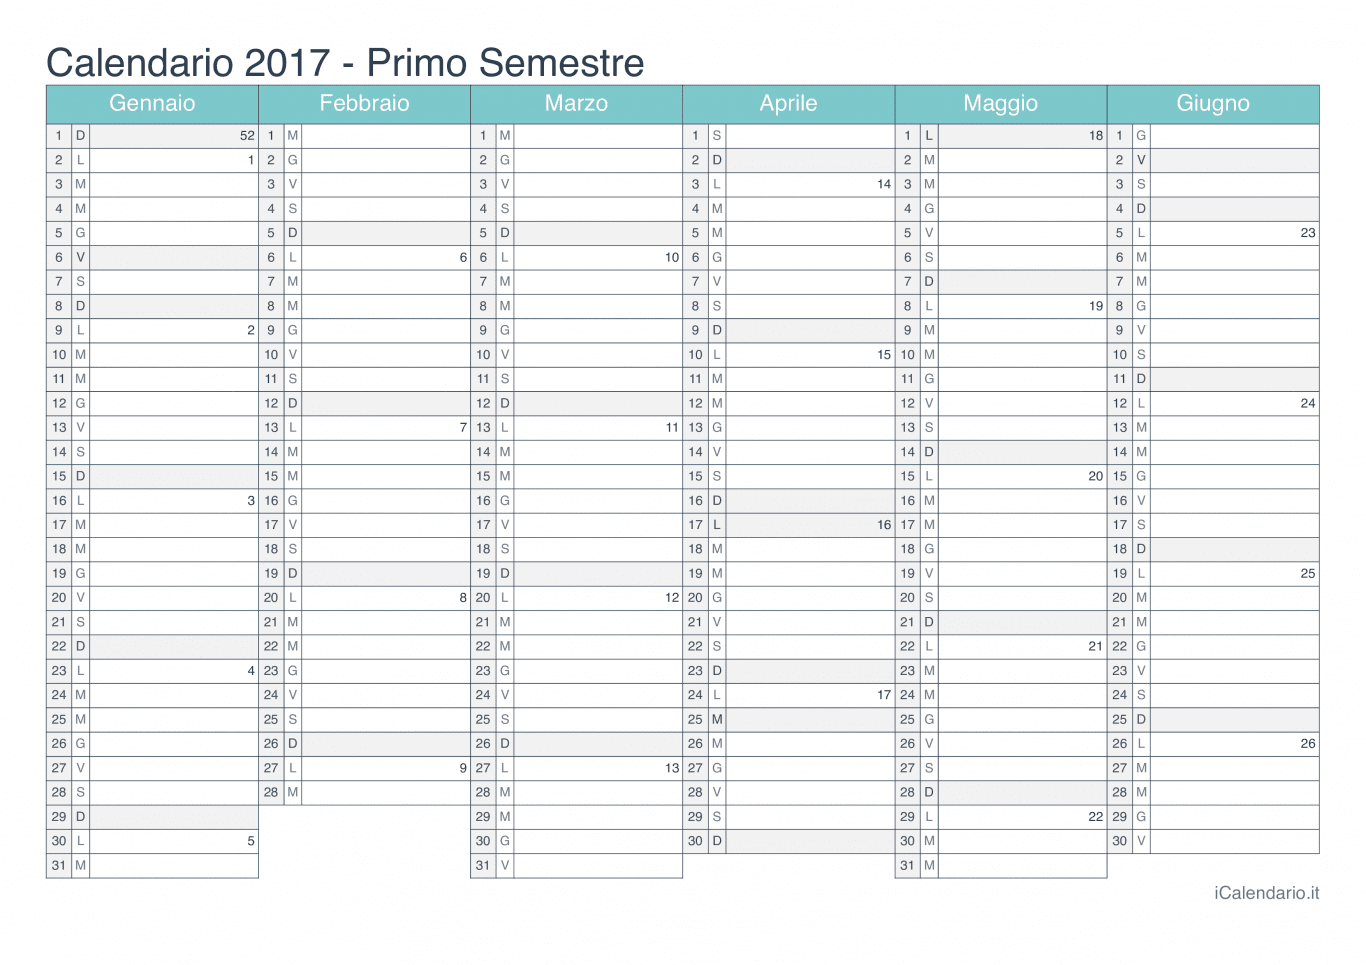 Calendario semestrale con numeri delle settimane 2017 - Turchese